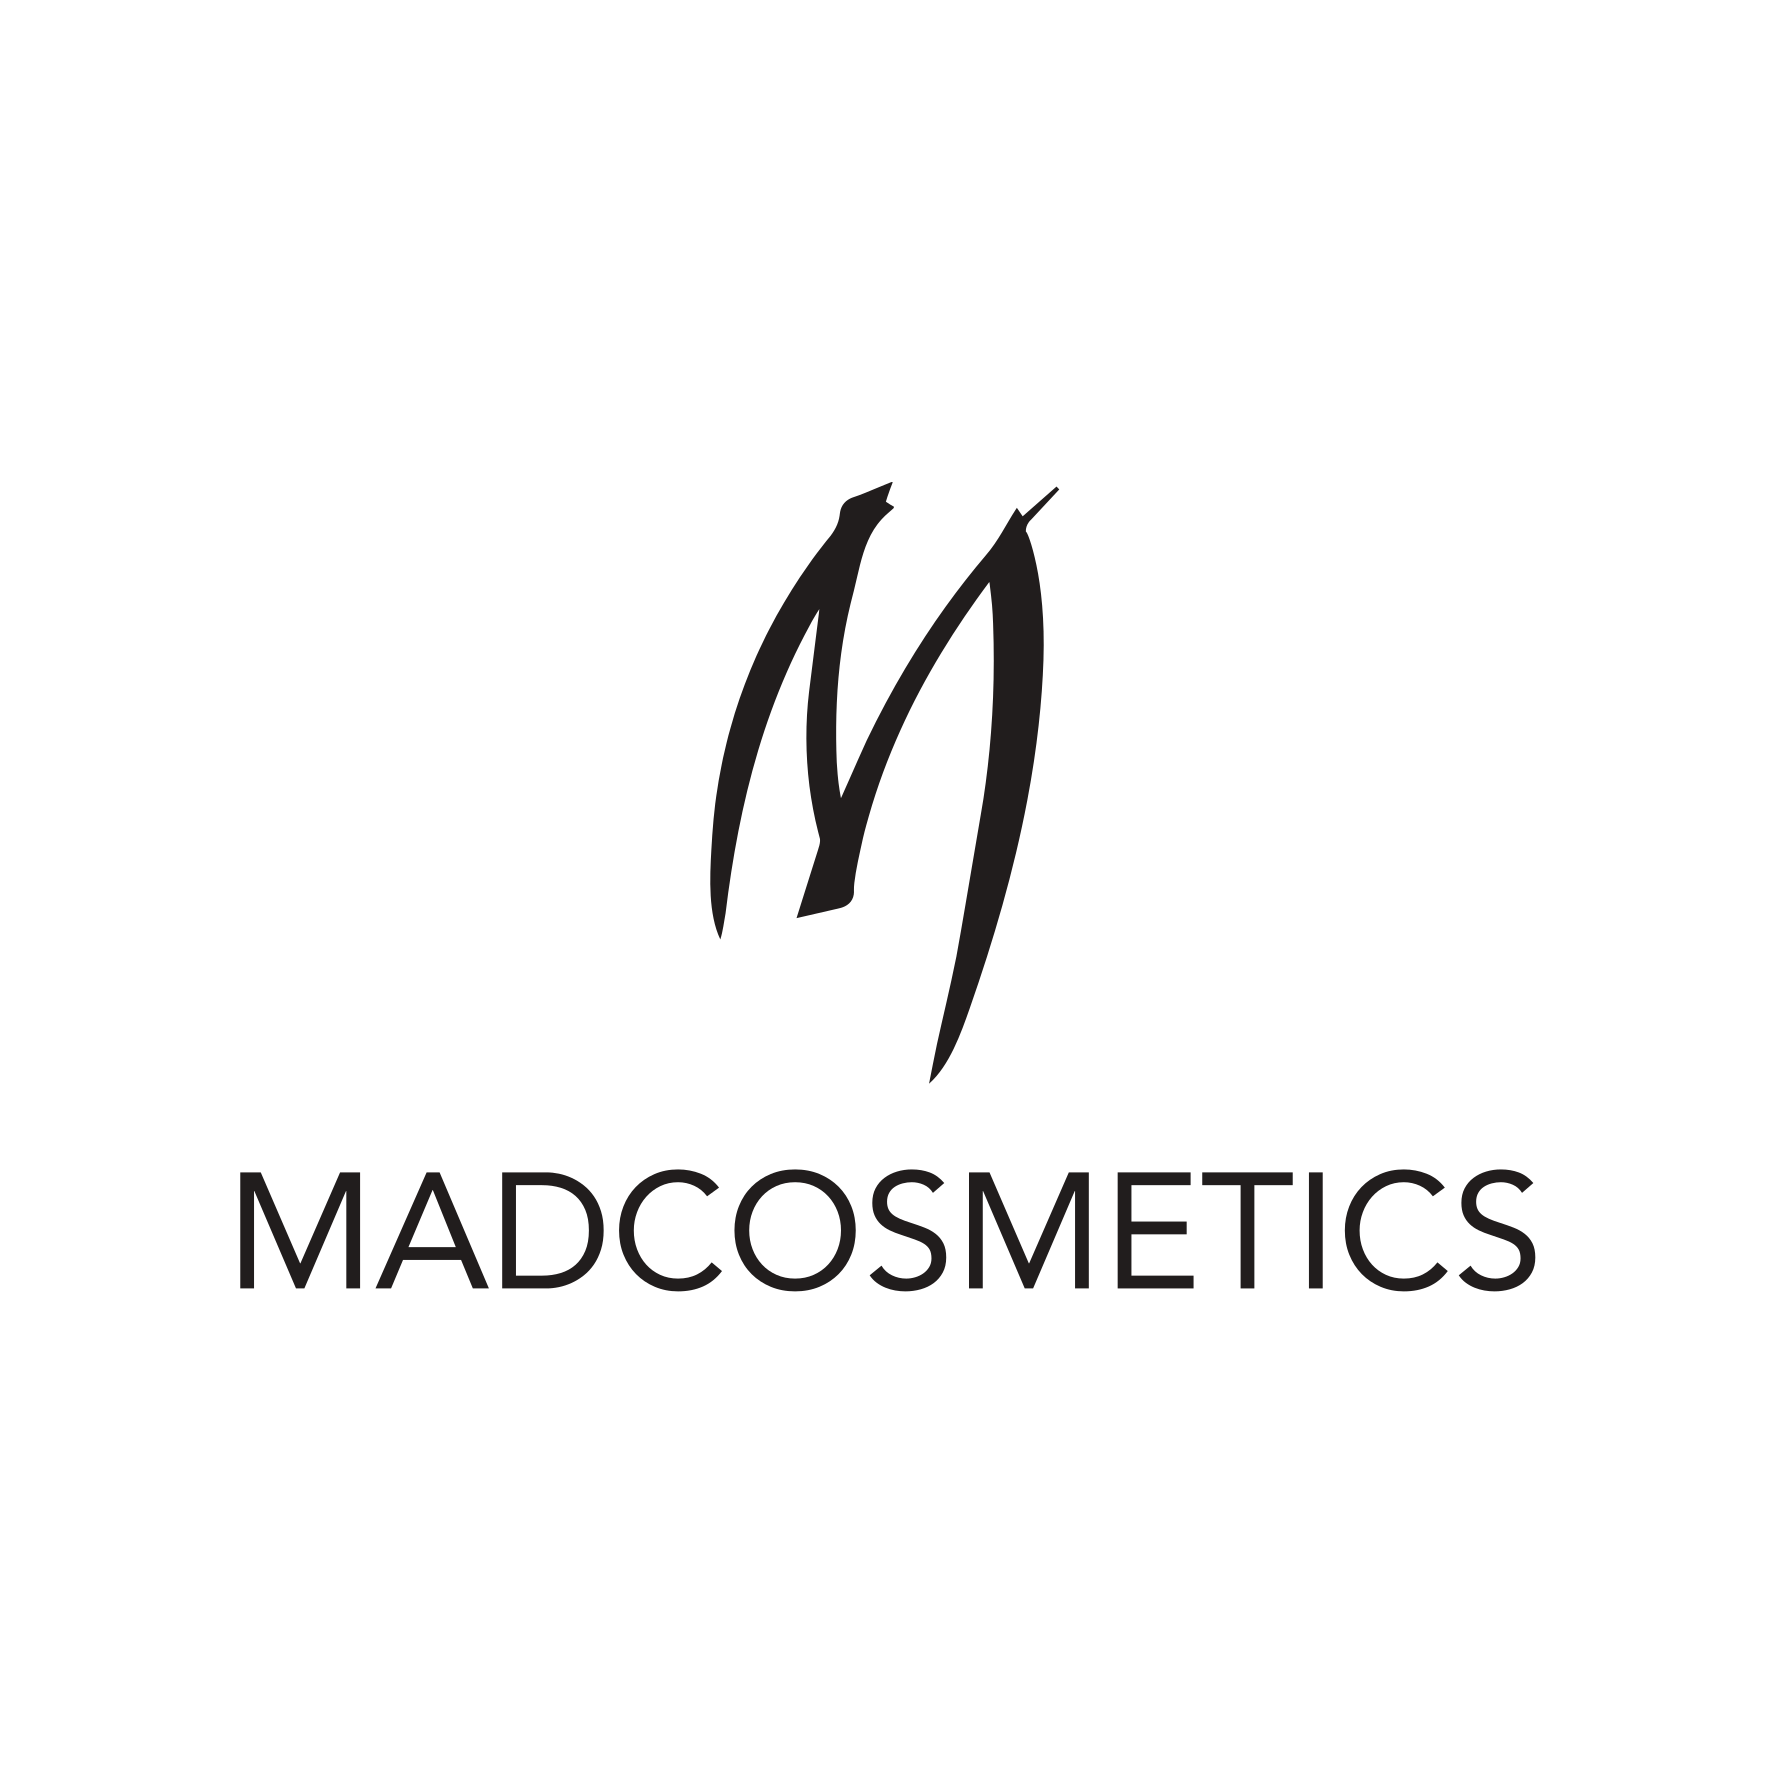 Mad Cosmetics Company W.L.L